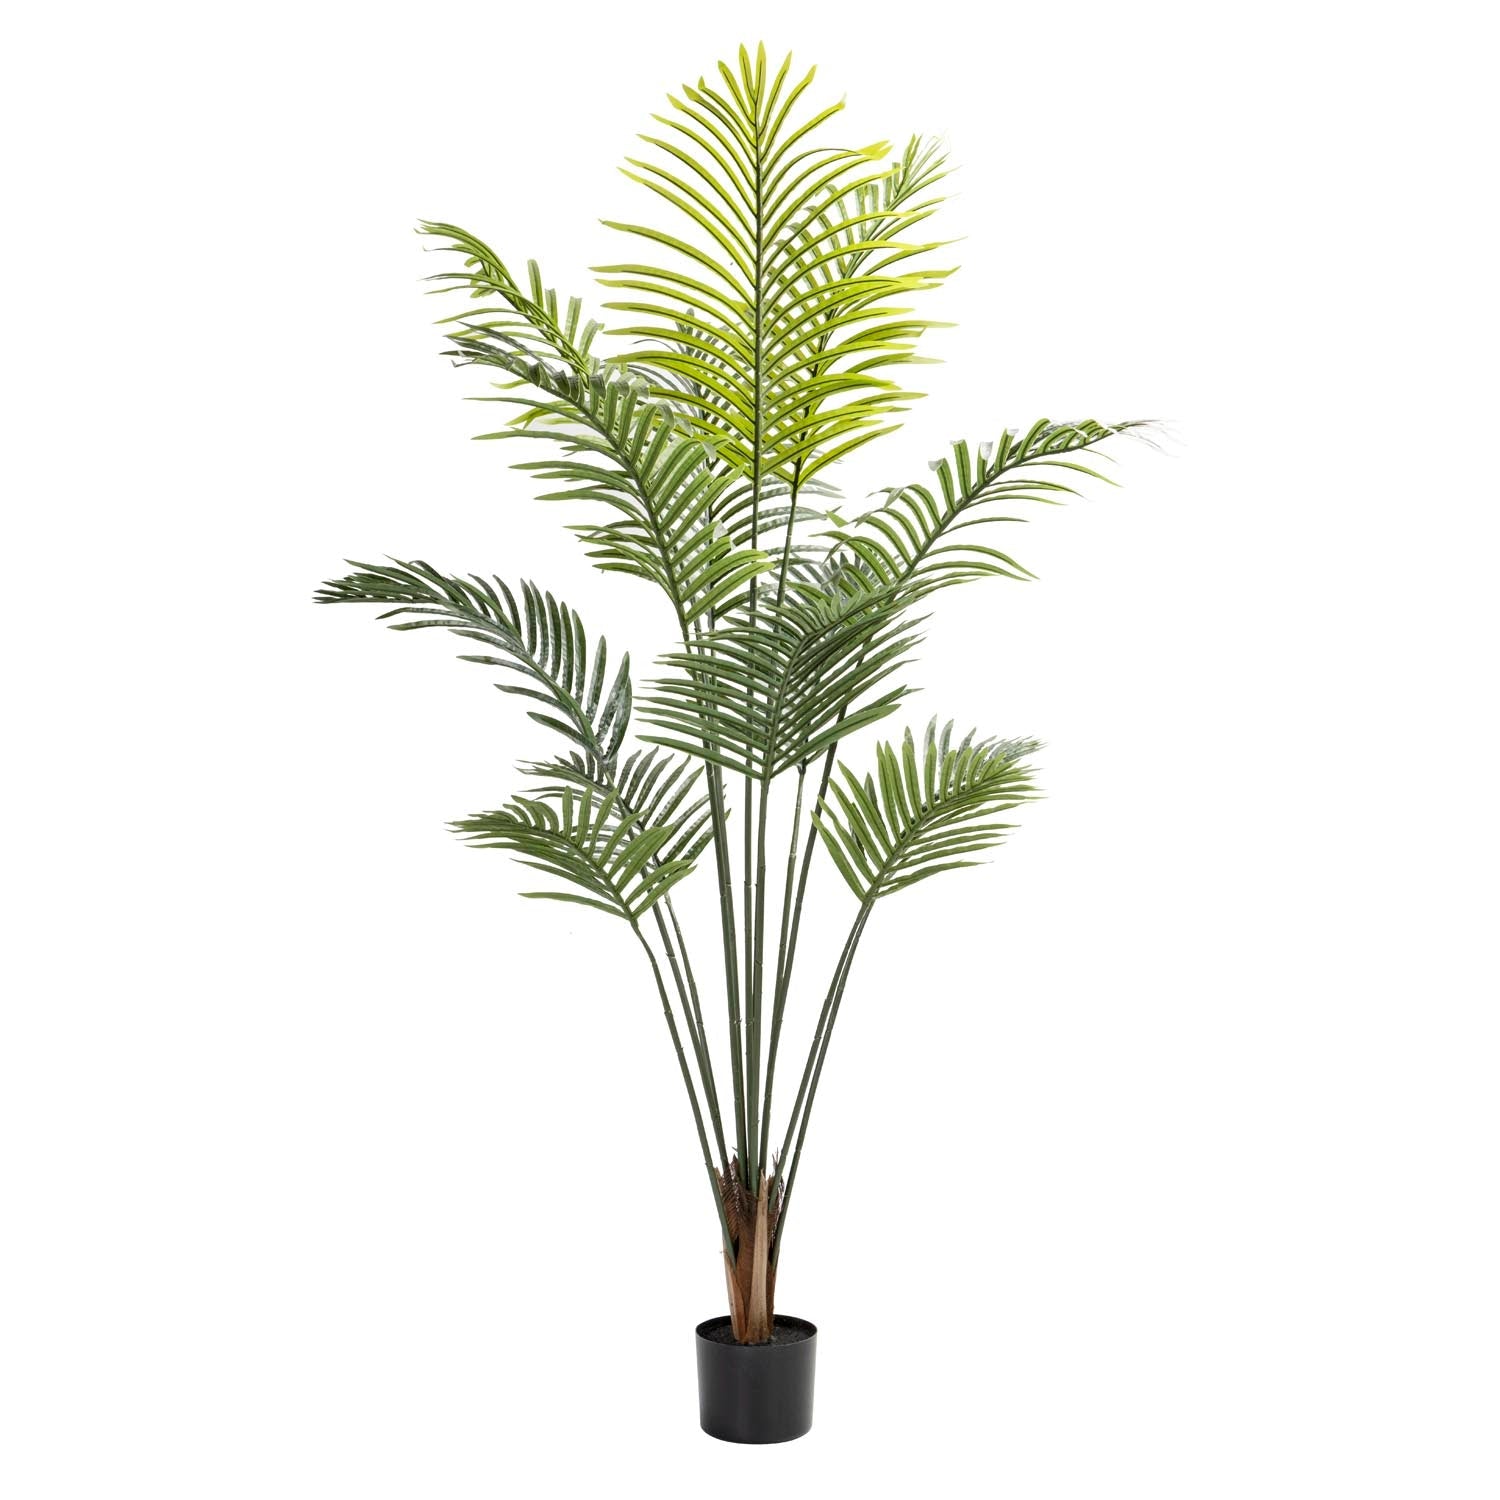 PALM PLANT IN POT - 160cm